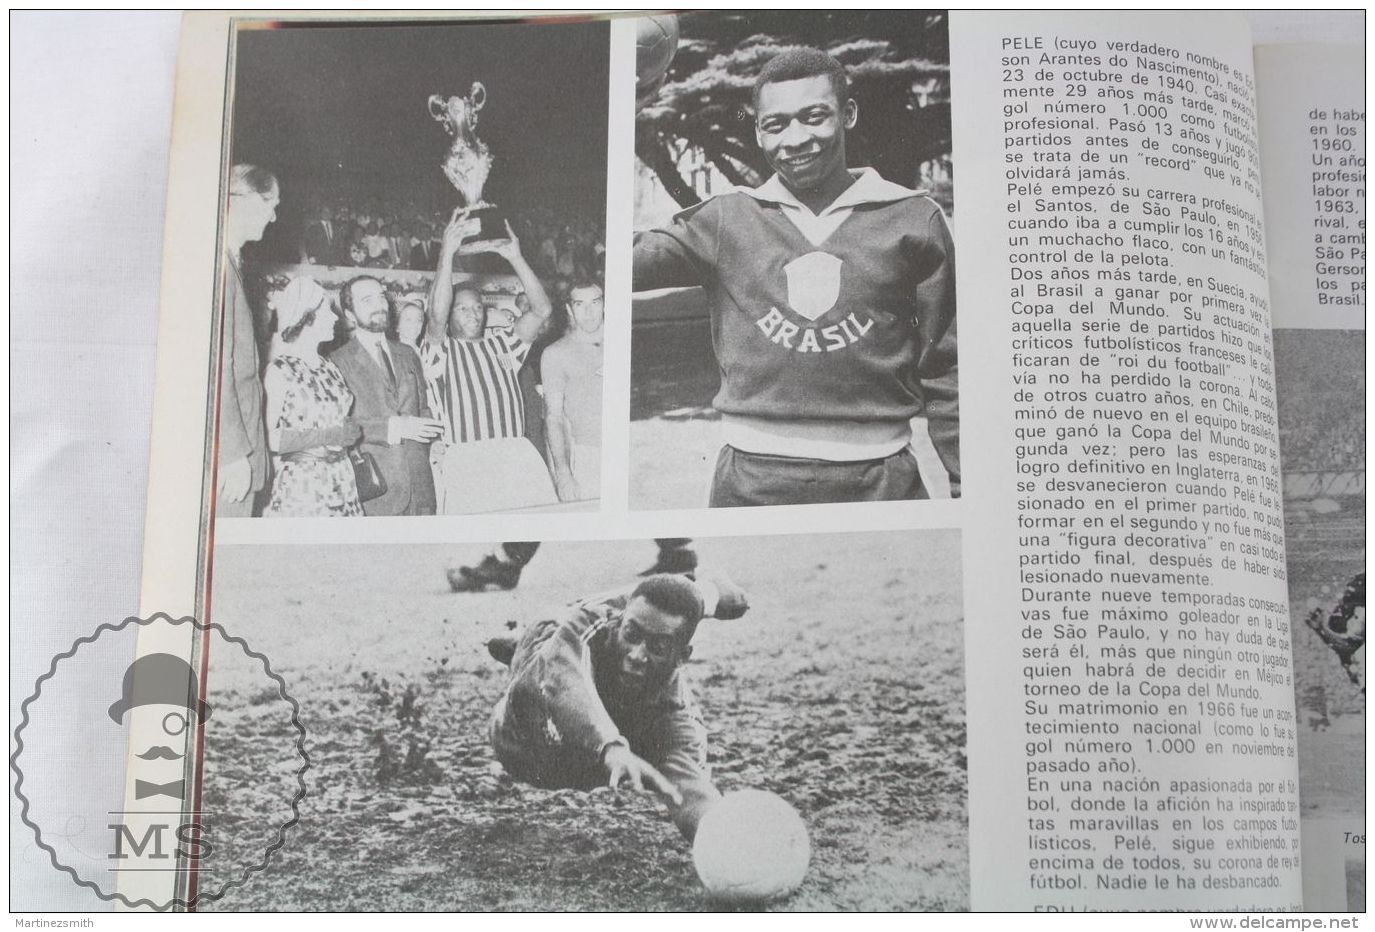 Vintage Mexico 1970 FIFA World Cup Magazine By Ladislao Kubala - Pele Images - Otros & Sin Clasificación